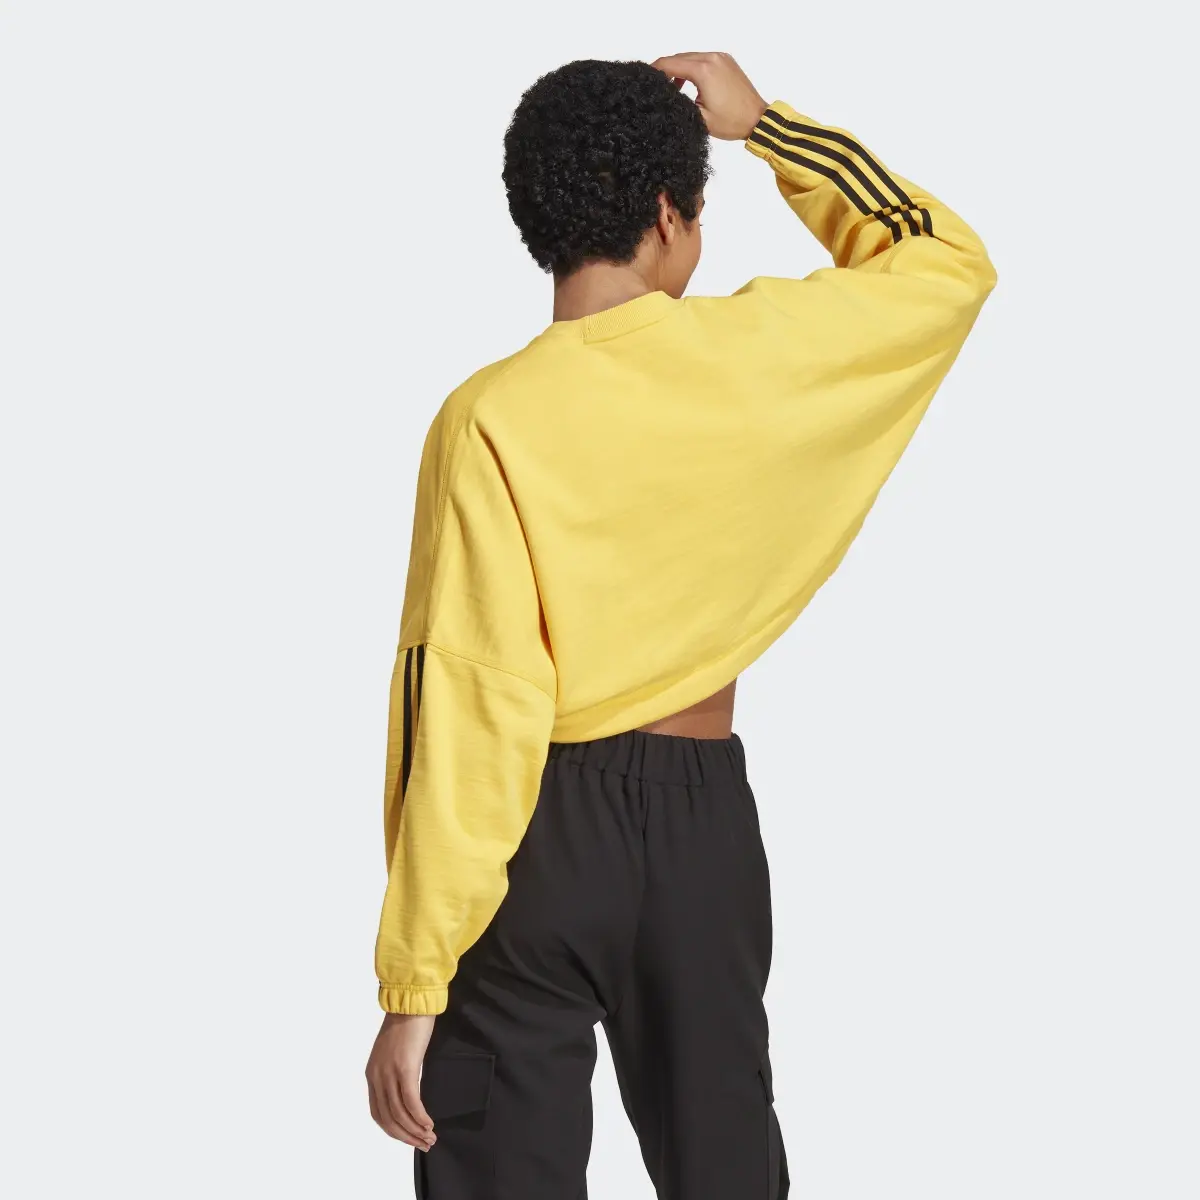 Adidas Dance Crop Versatile Sweatshirt. 3